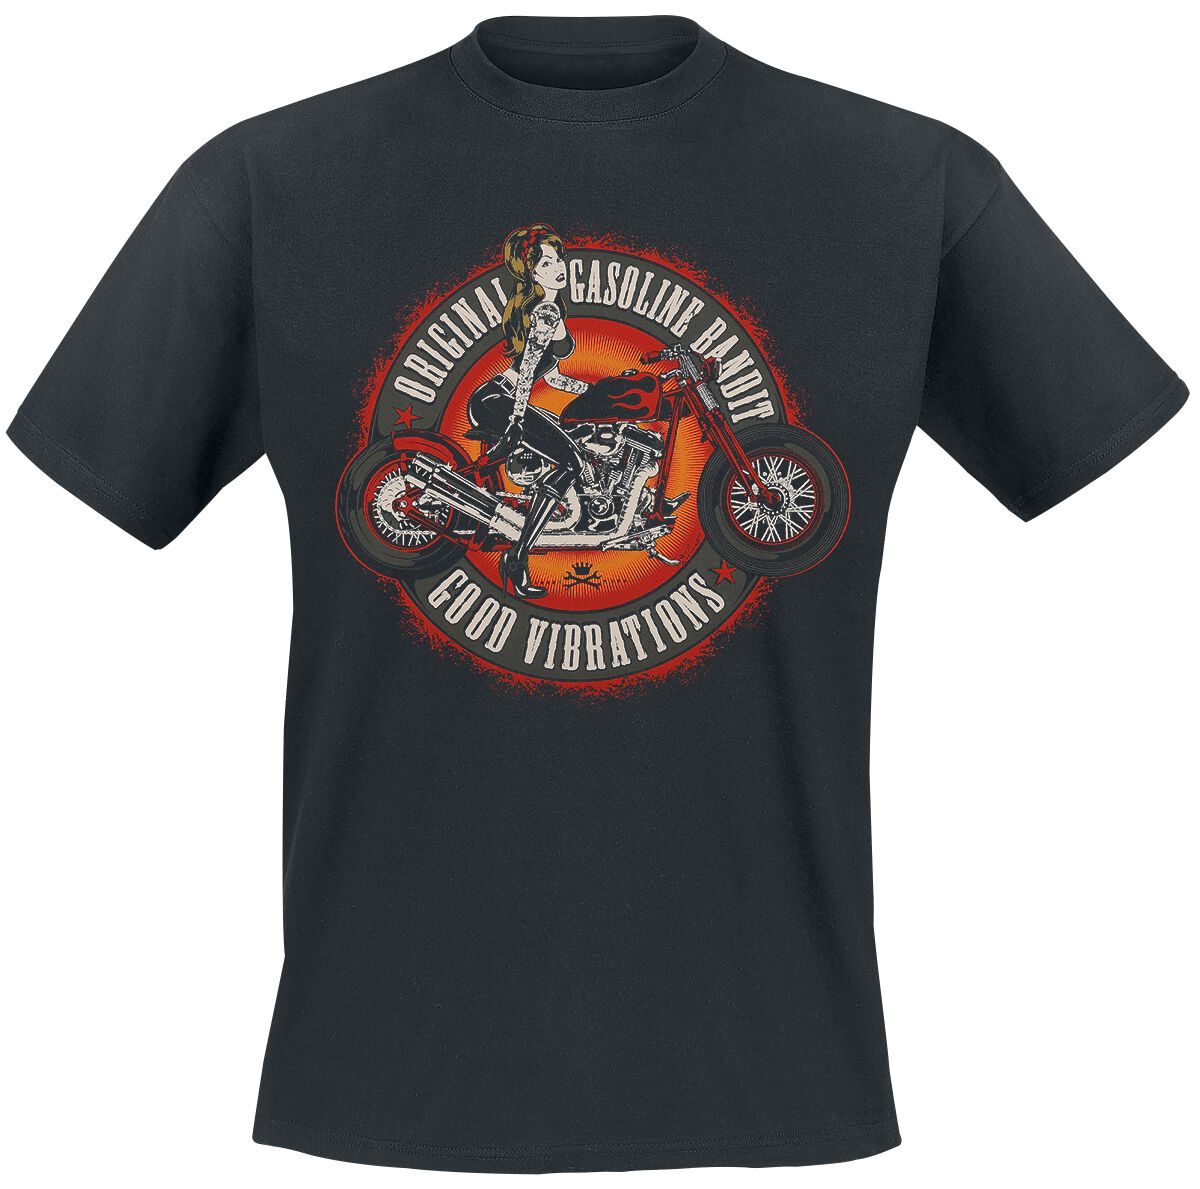 Gasoline Bandit - Rockabilly T-Shirt - Good Vibrations - S bis 3XL - für Männer - Größe XL - schwarz